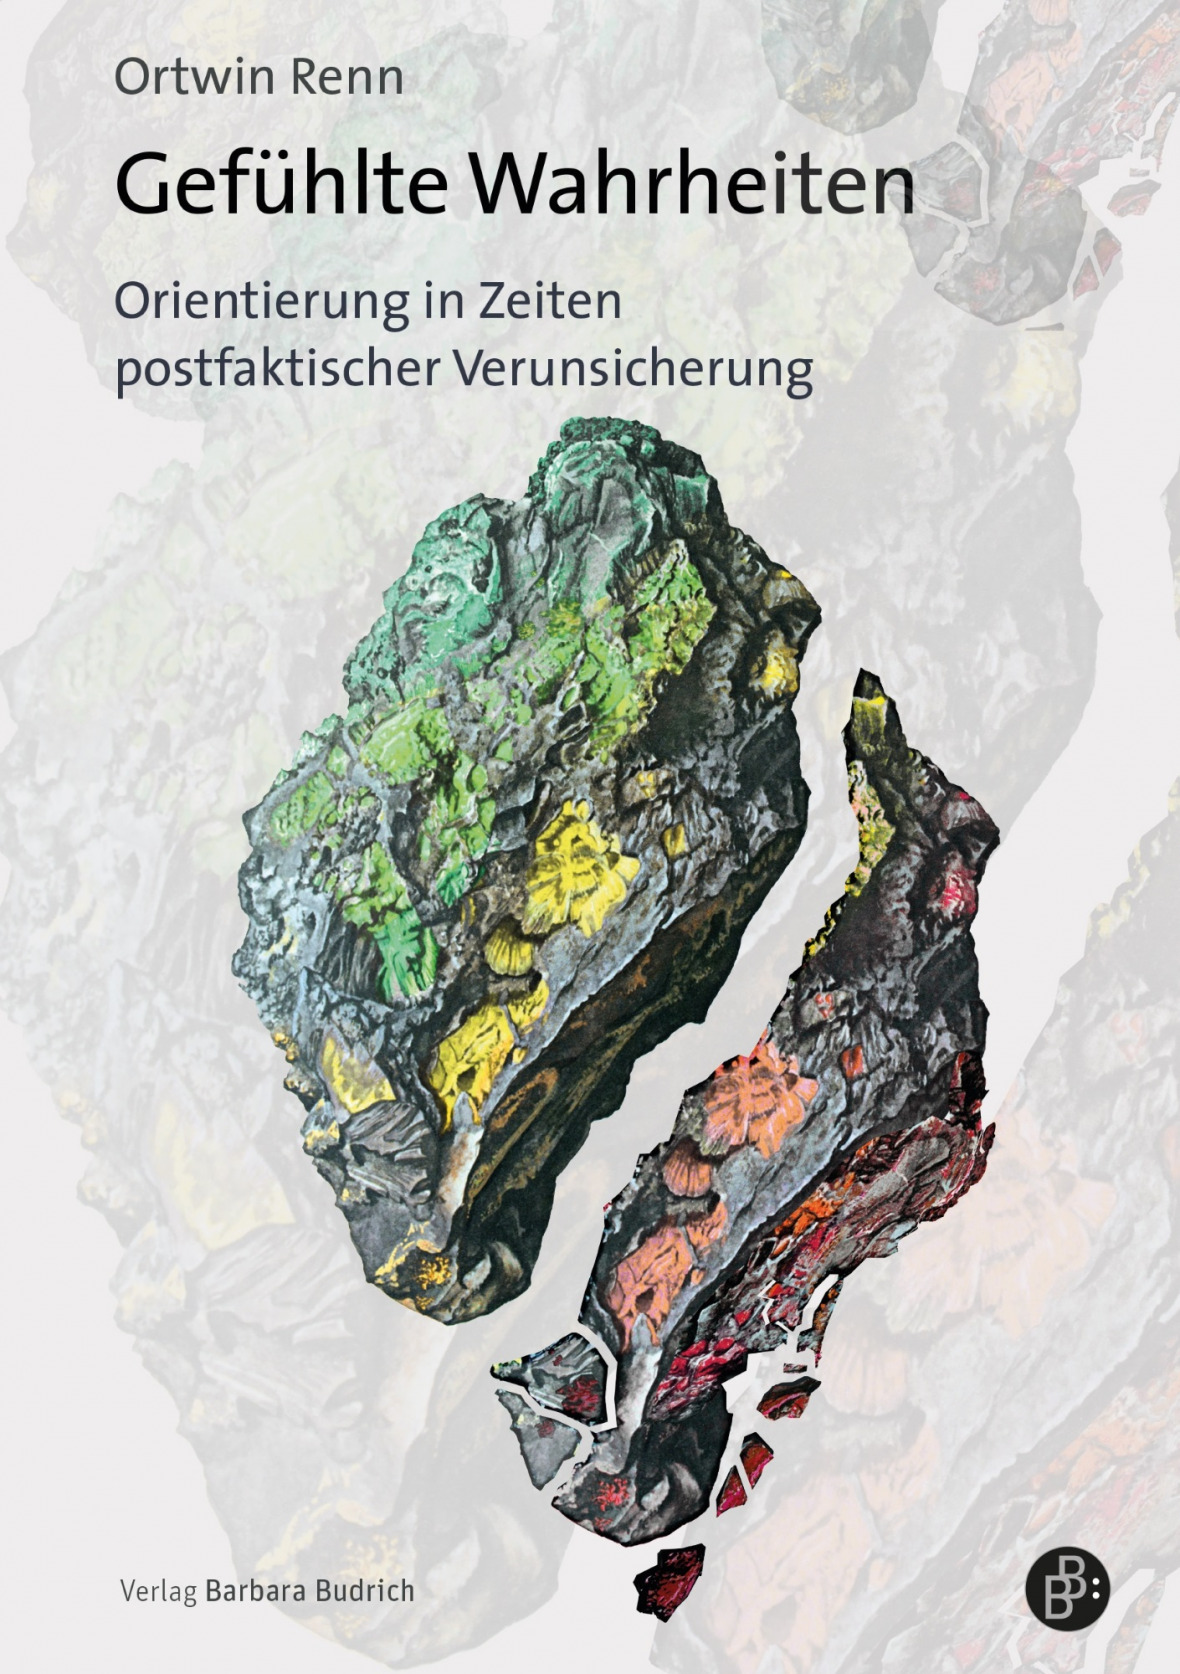 Cover Ortwin Renn Buch „Gefühlte Wahrheiten – Orientierung in Zeiten postfaktischer Verunsicherung“. 